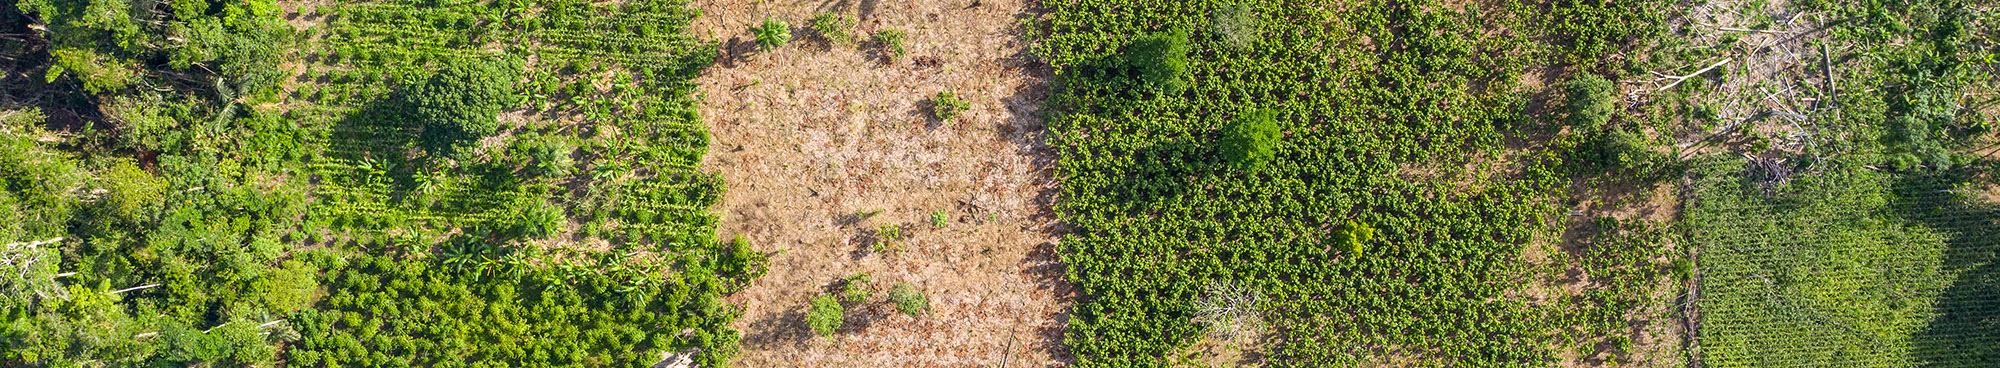 Mosaïque agroforestière FDV Yasuni  ©  E. Barrera, AVSF